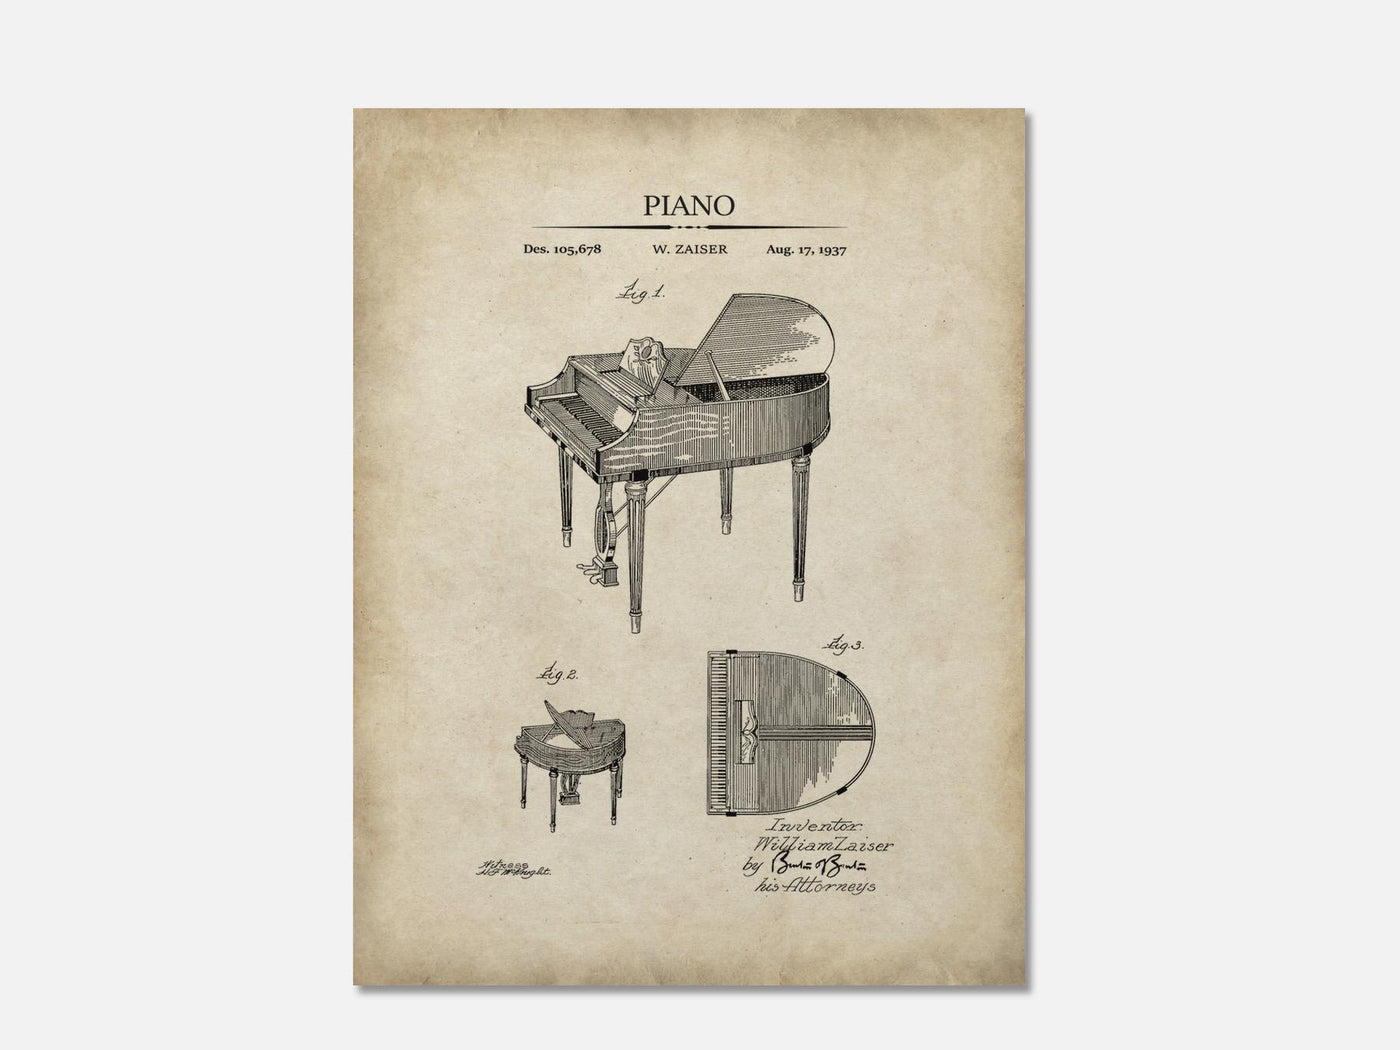 Piano Patent Art Print mockup - A_t10117.1-V1-PC_AP-SS_1-PS_5x7-C_par variant